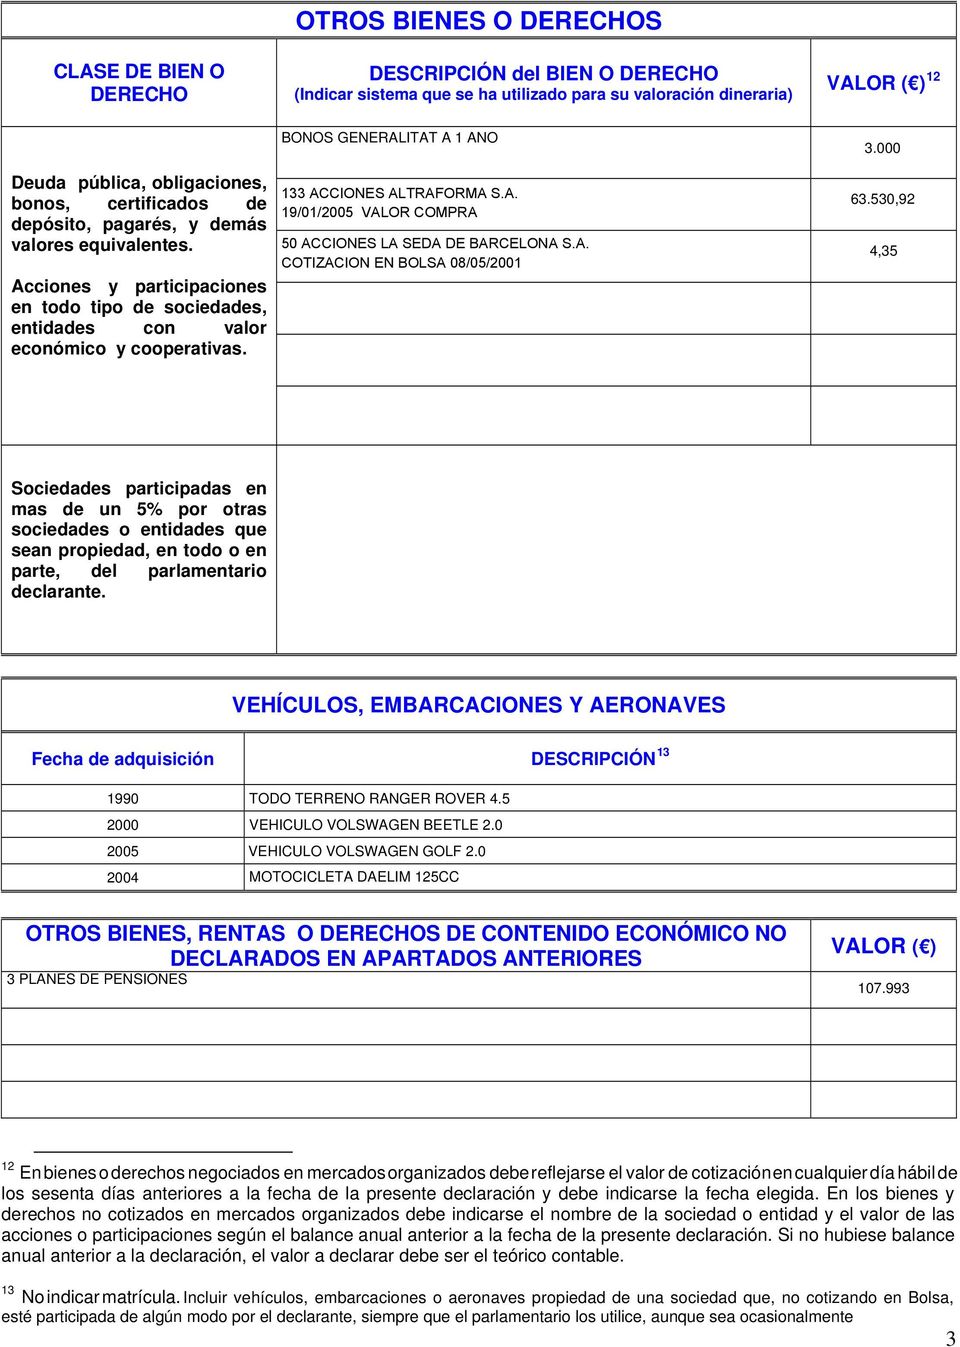 BONOS GENERALITAT A 1 AÑO 133 ACCIONES ALTRAFORMA S.A. 19/01/2005 VALOR COMPRA 50 ACCIONES LA SEDA DE BARCELONA S.A. COTIZACION EN BOLSA 08/05/2001 3.000 63.